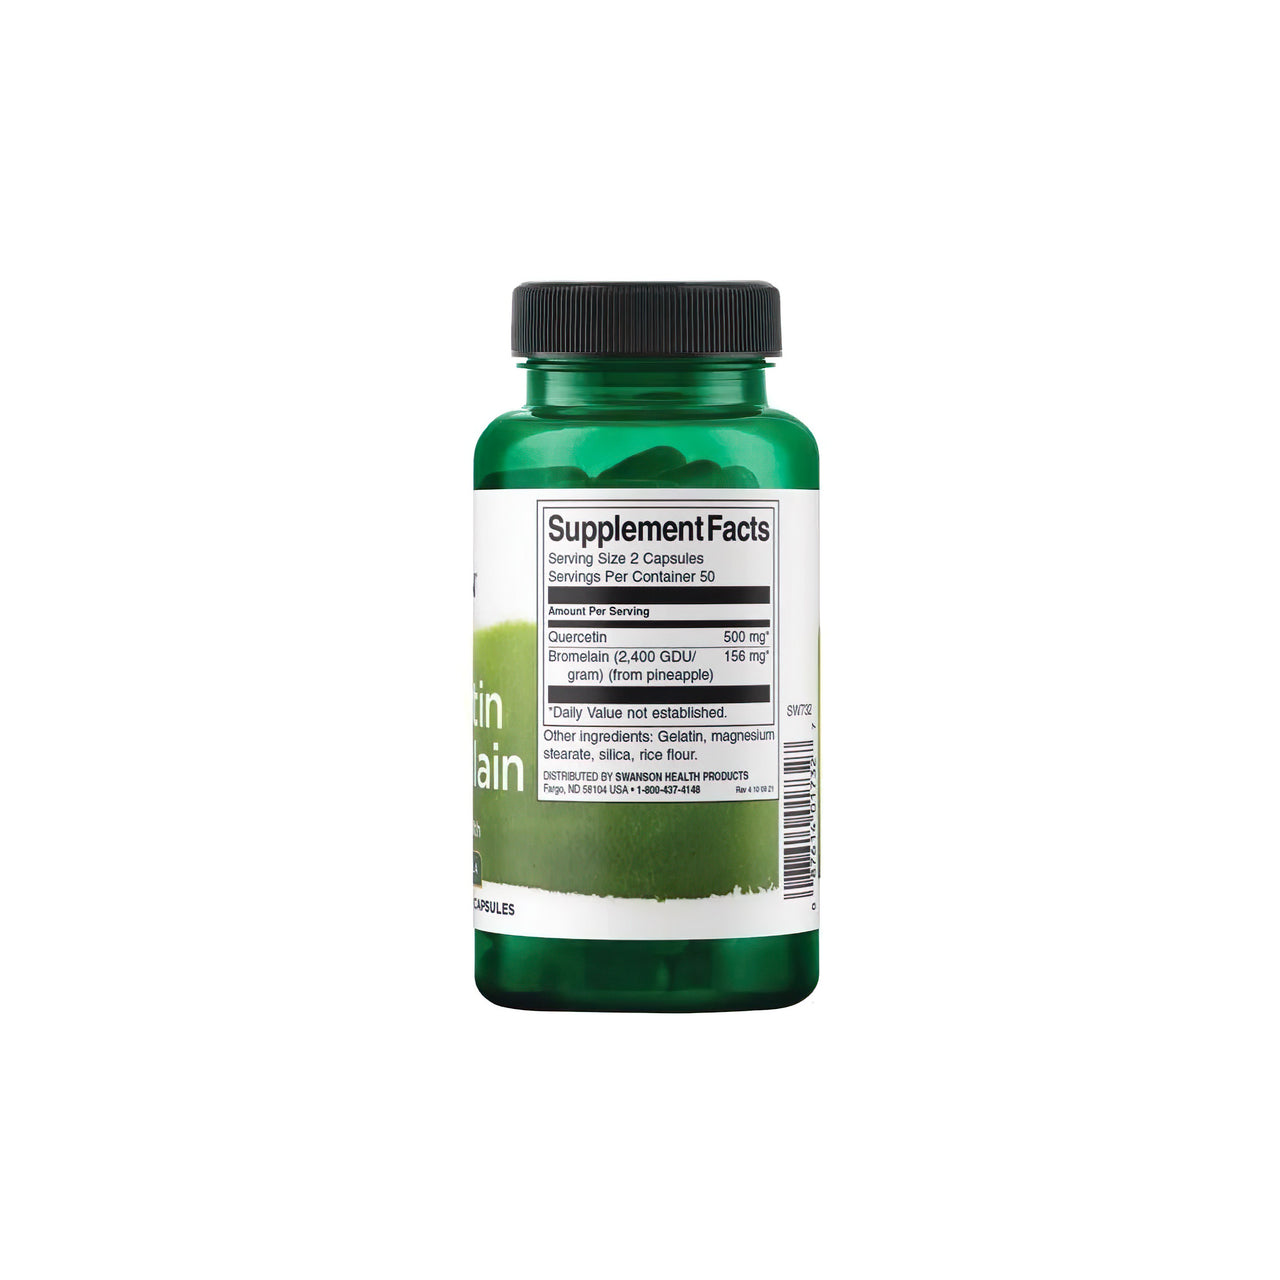 Um frasco de Swanson's Quercetin with Bromelain 100 caps, um nutriente essencial para o sistema imunitário, sobre um fundo branco.